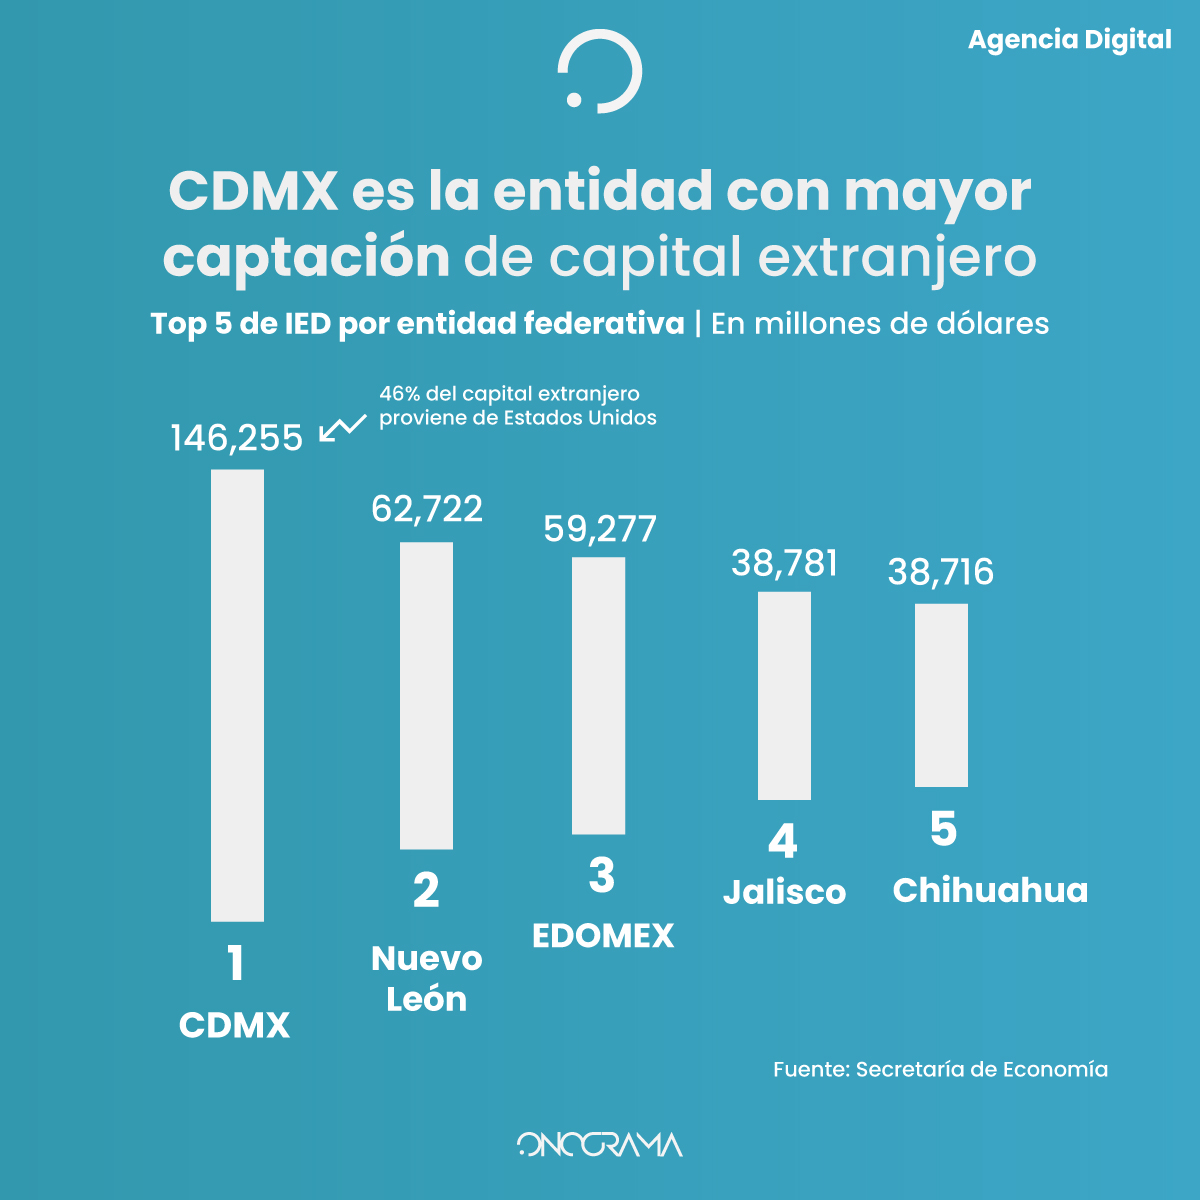 CDMX es la entidad con mayor captación de capital extranjero